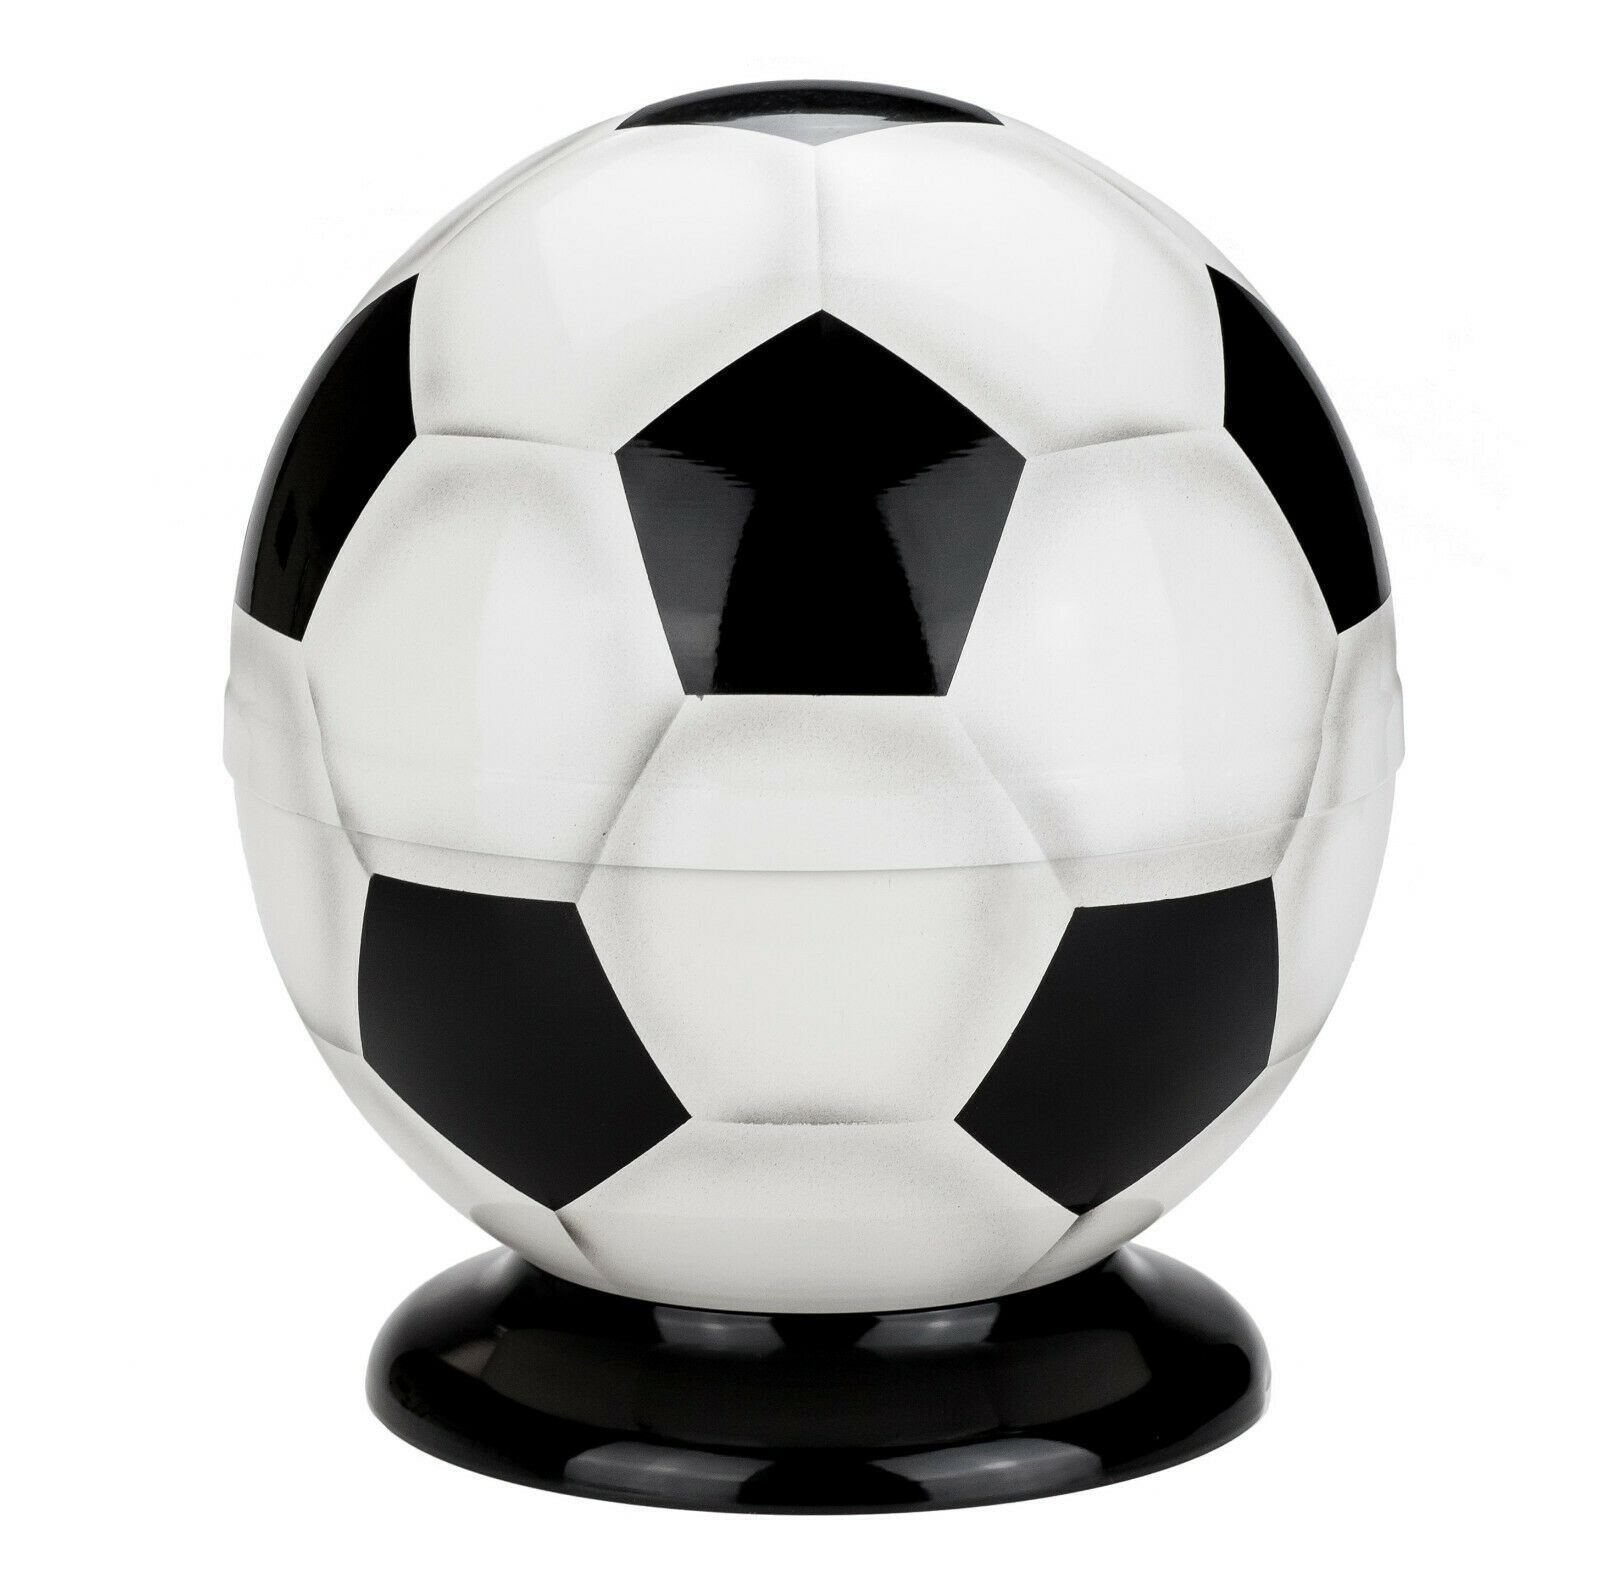 Soccer ball urn